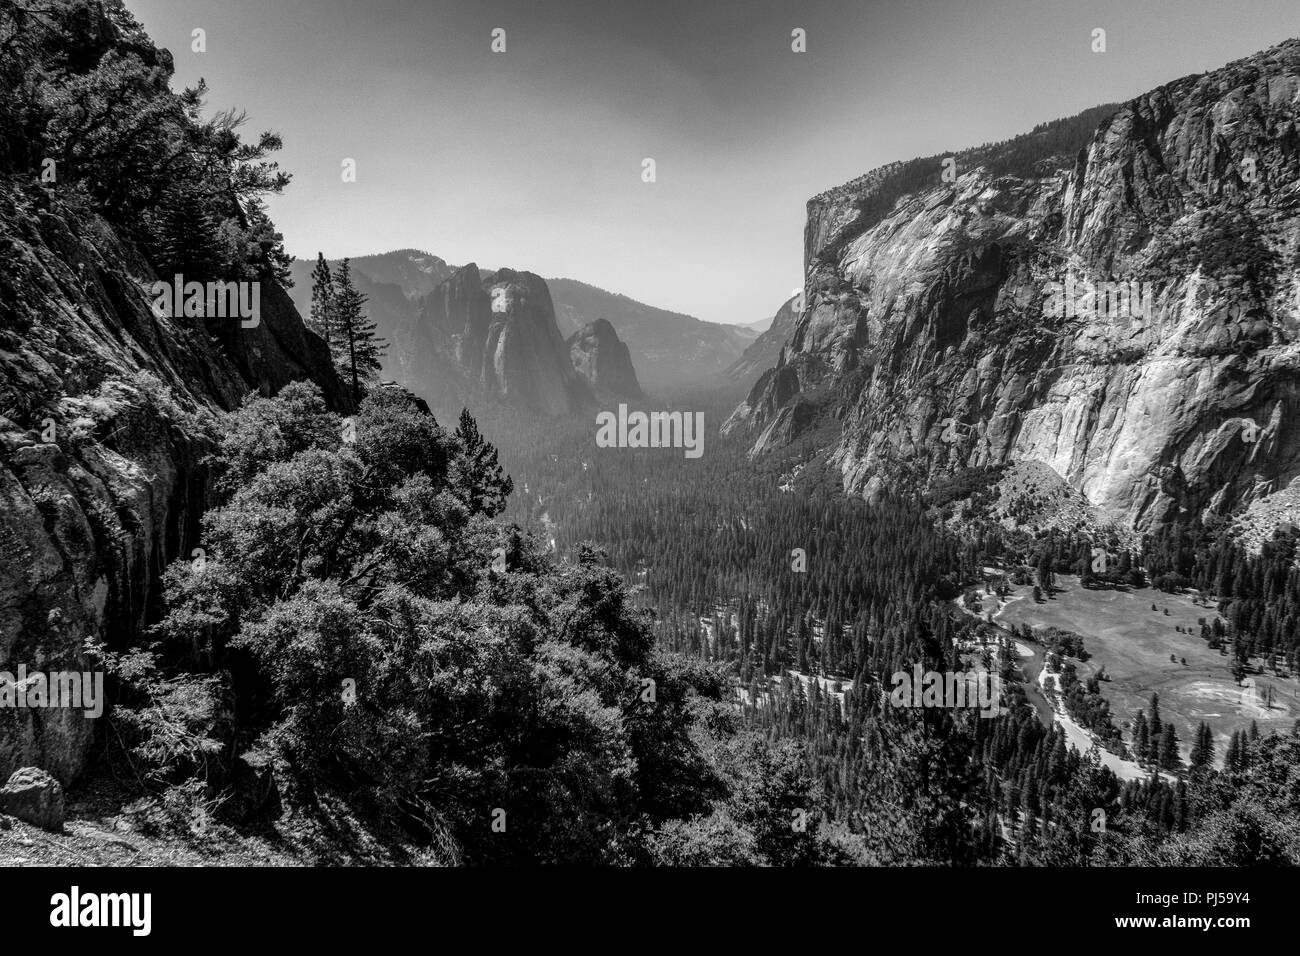 Una vista guardando verso il Parco Nazionale di Yosemite Valley con El Capitan sulla destra nel Parco Nazionale di Yosemite. Il fumo proveniente da incendi indugia nella valle. Foto Stock